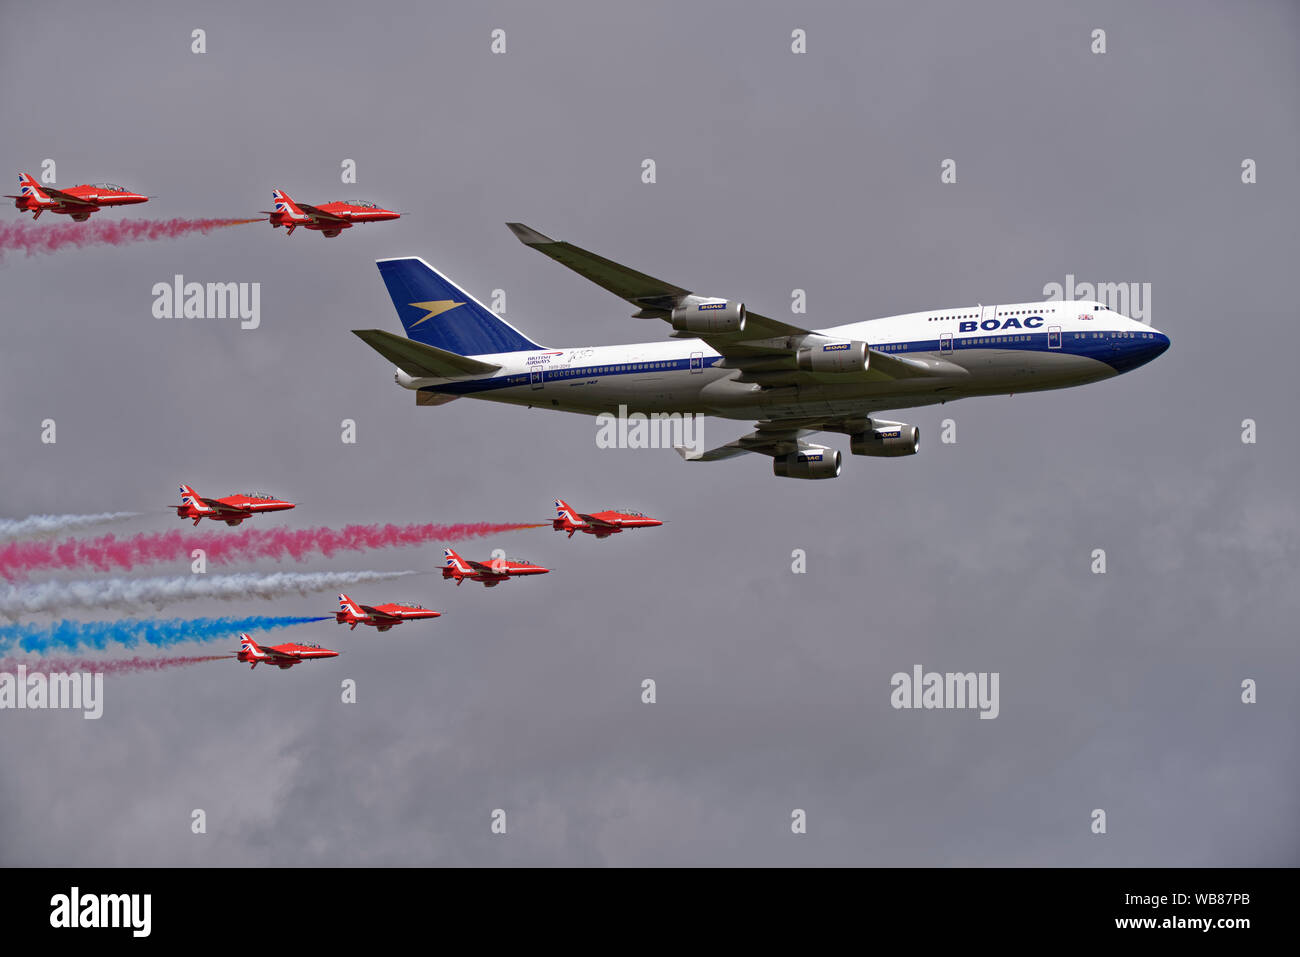 Il British frecce rosse aerobatic team display celebrare British Airways centesimo compleanno con un flypast in formazione con un BOAC Boeing 747 aereo di linea Foto Stock